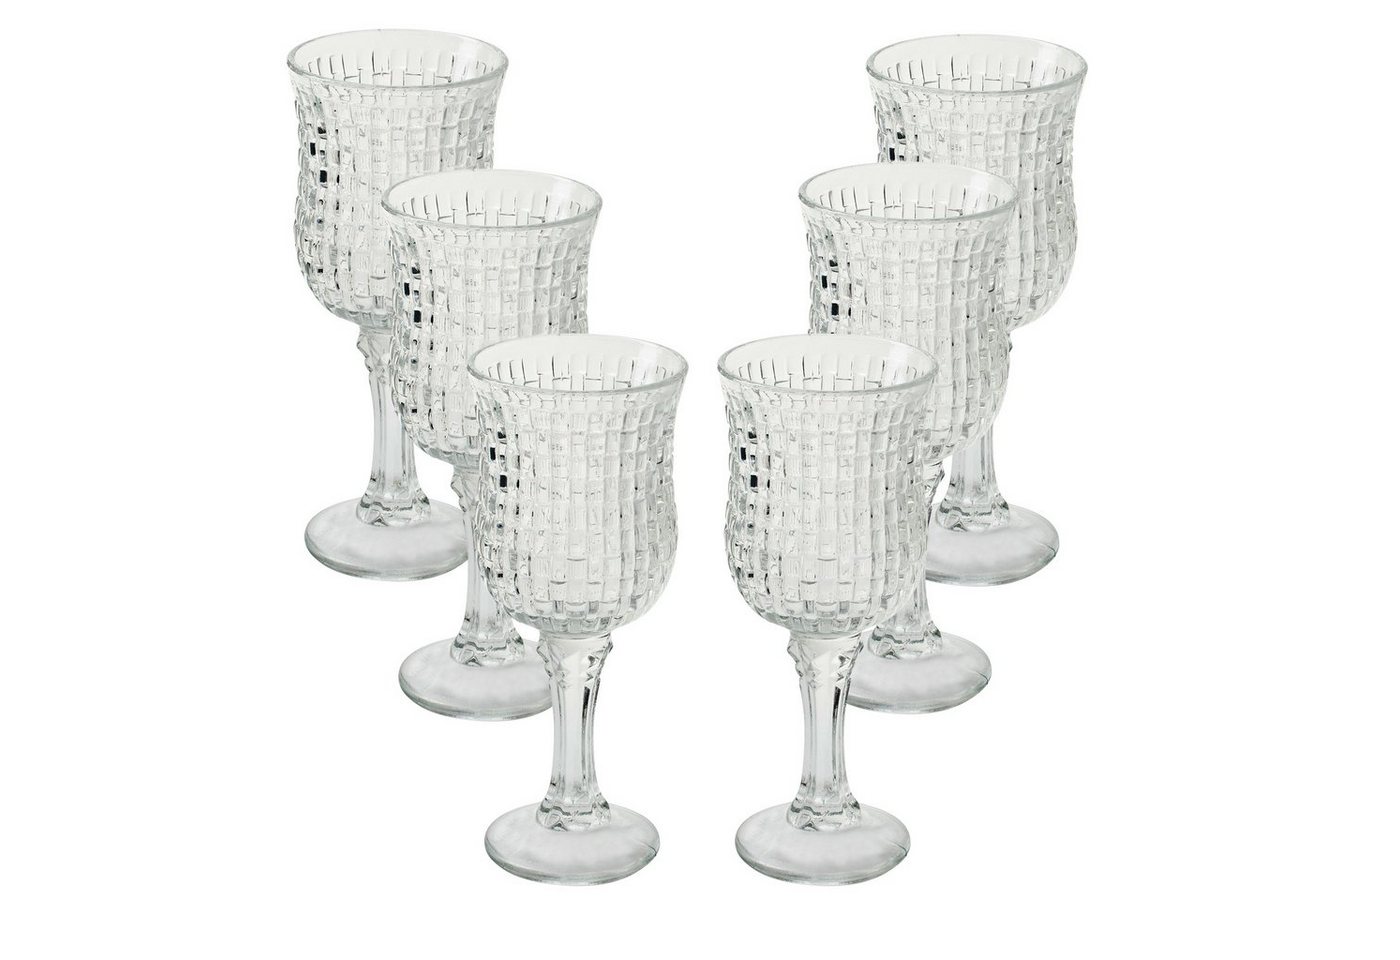 Annastore Teelichthalter Teelichtgläser Kleine Windlichter Tischdeko für Hochzeit, Vase, Blumenvase, Kerzenhalter von Annastore